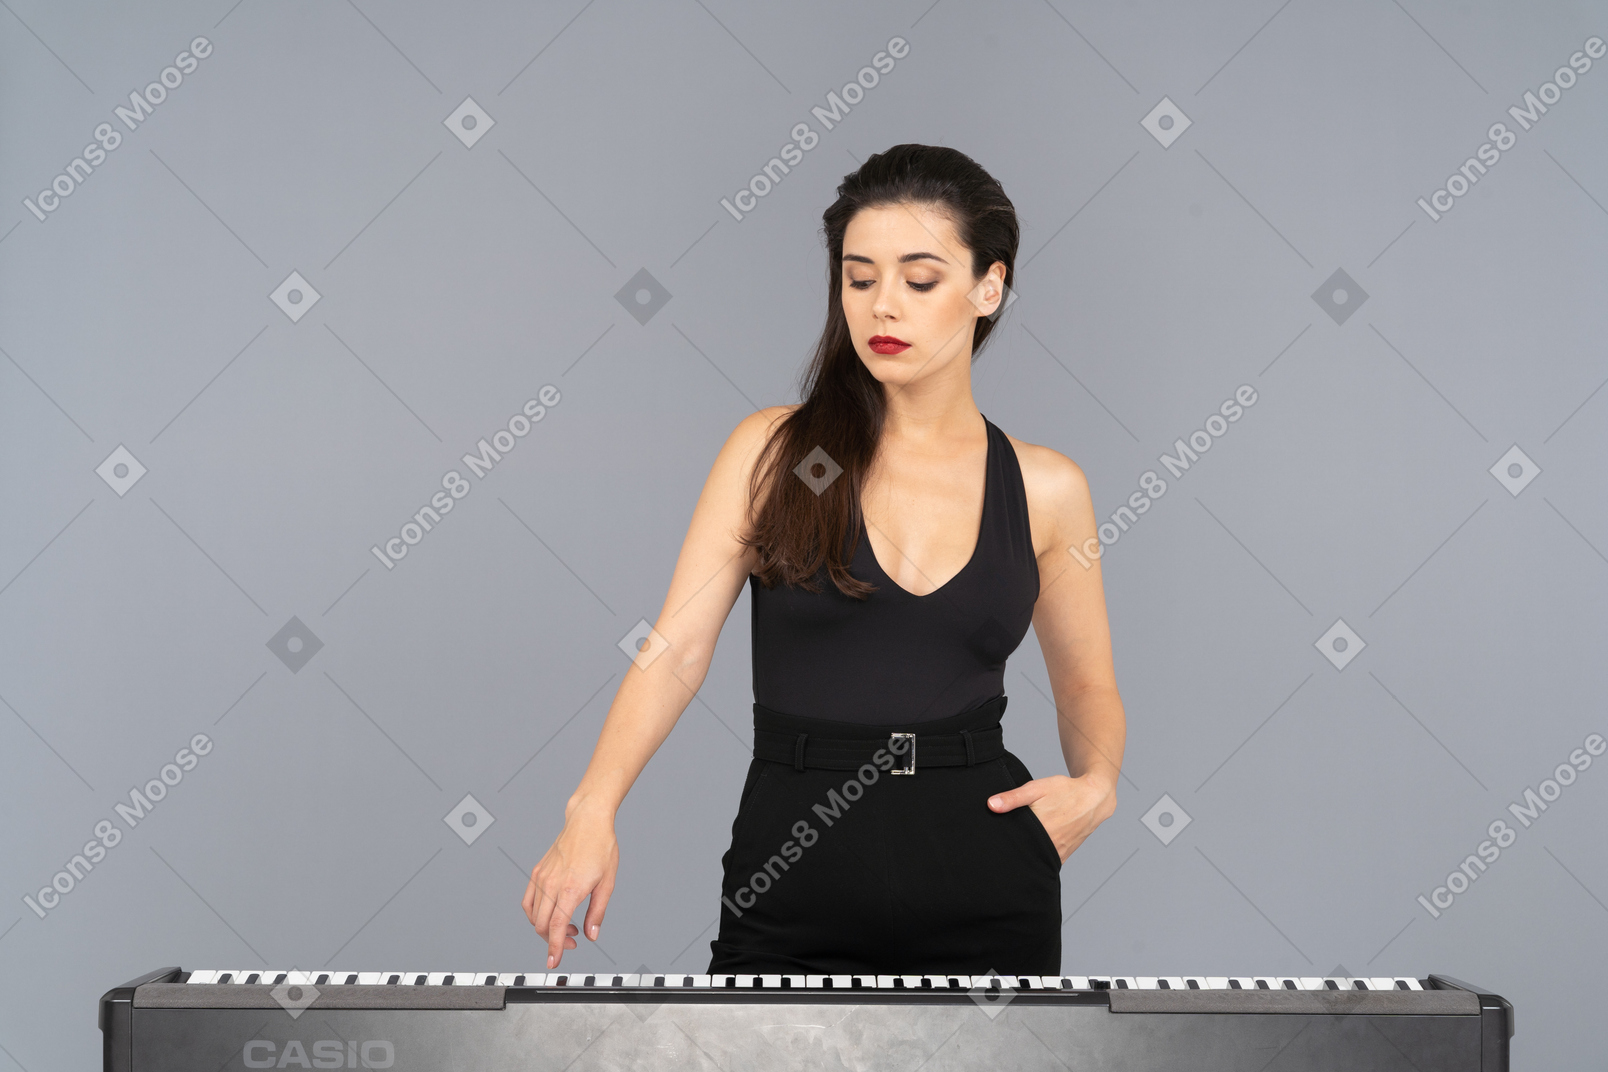 피아노의 키를 누르면 검은 드레스에 젊은 아가씨의 전면보기